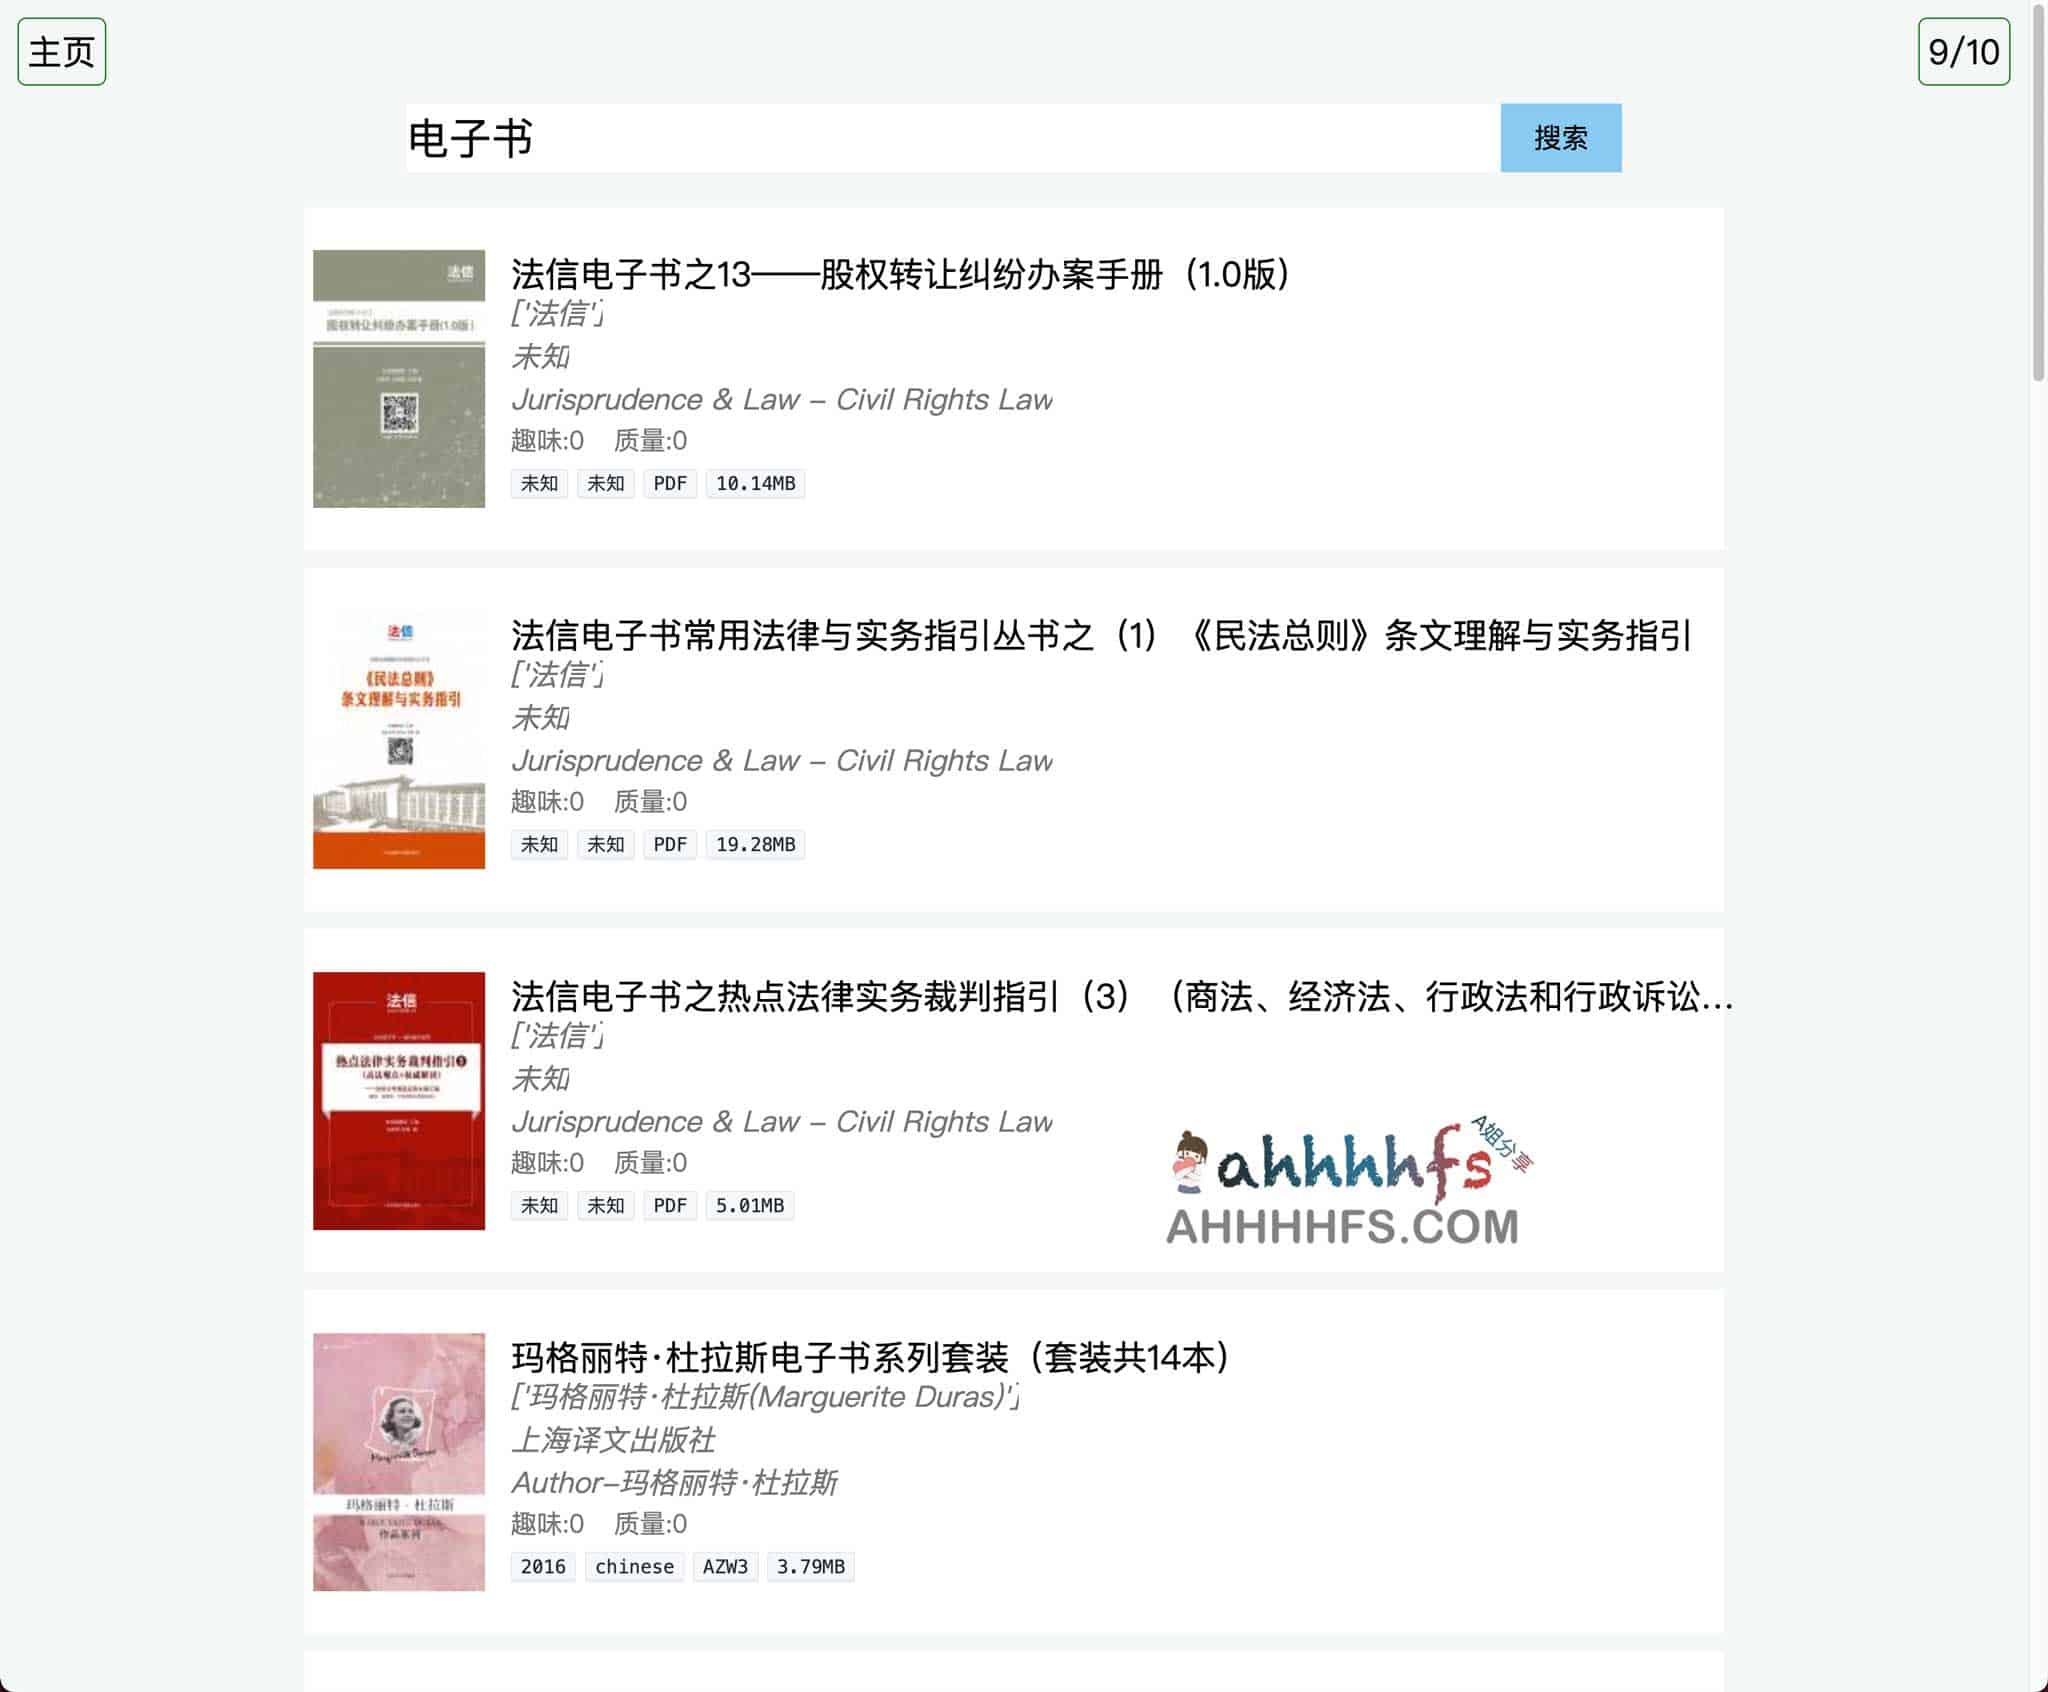 电子书搜索引擎-clibrary中文图书馆